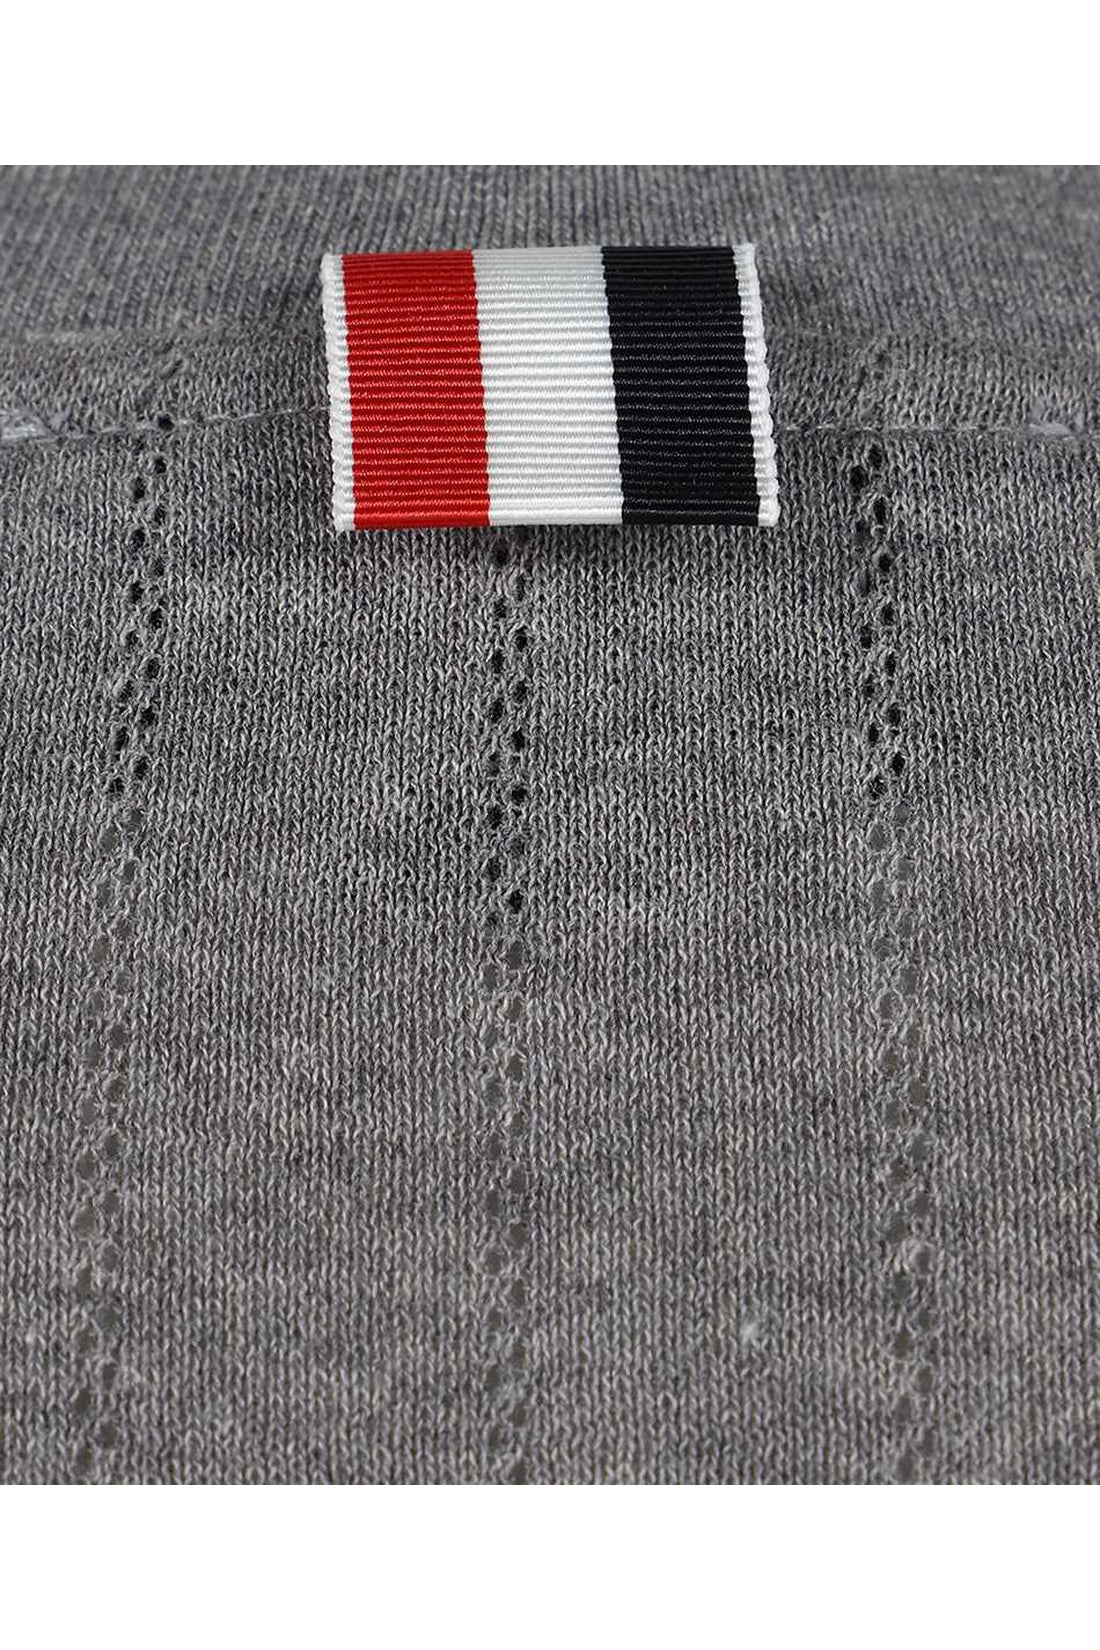 Thom Browne-OUTLET-SALE-Cotton knit T-shirt-ARCHIVIST